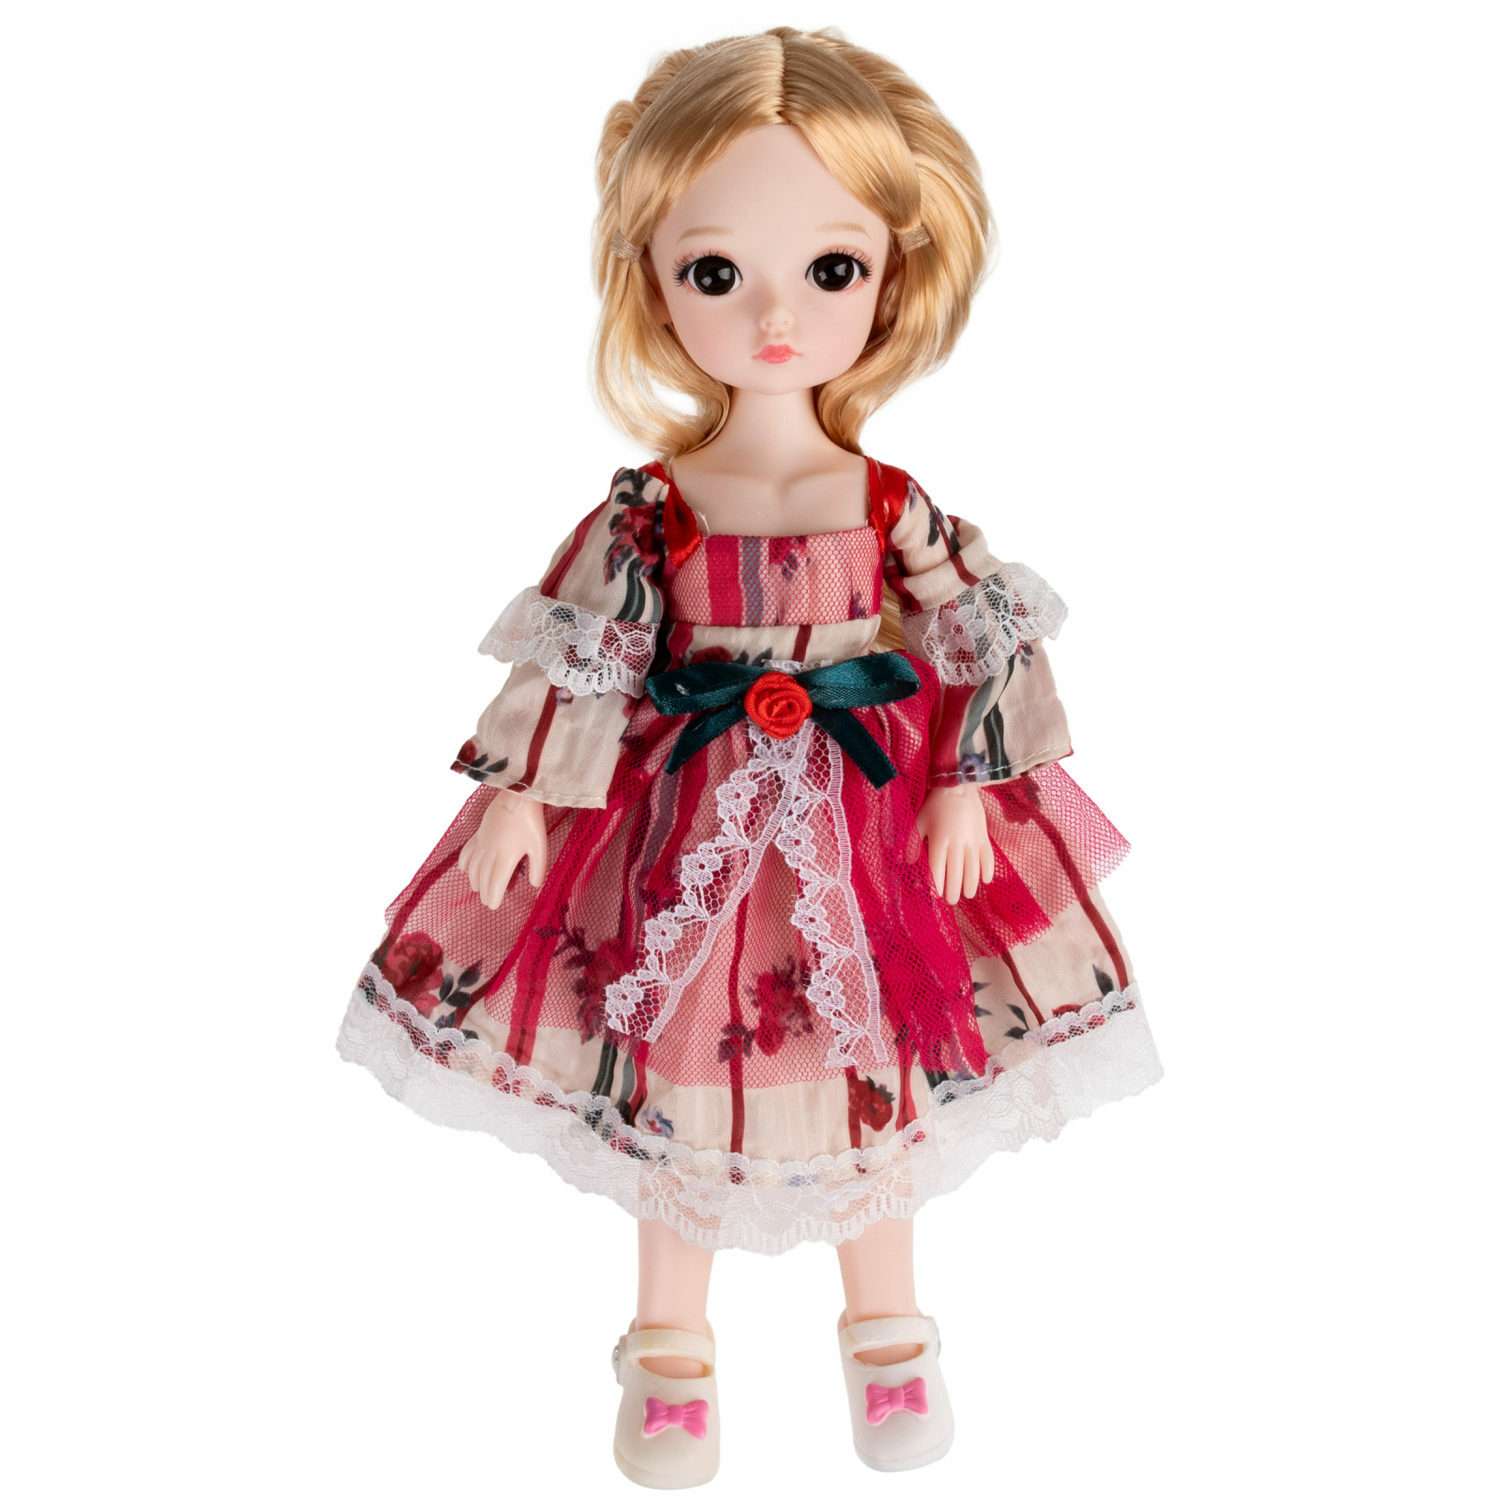 Кукла шарнирная 30 см 1TOY Alisa Kawaii с длинными волосами блондинка БЖД bjd аниме экшн фигурка игрушки для девочек Т24342 - фото 1